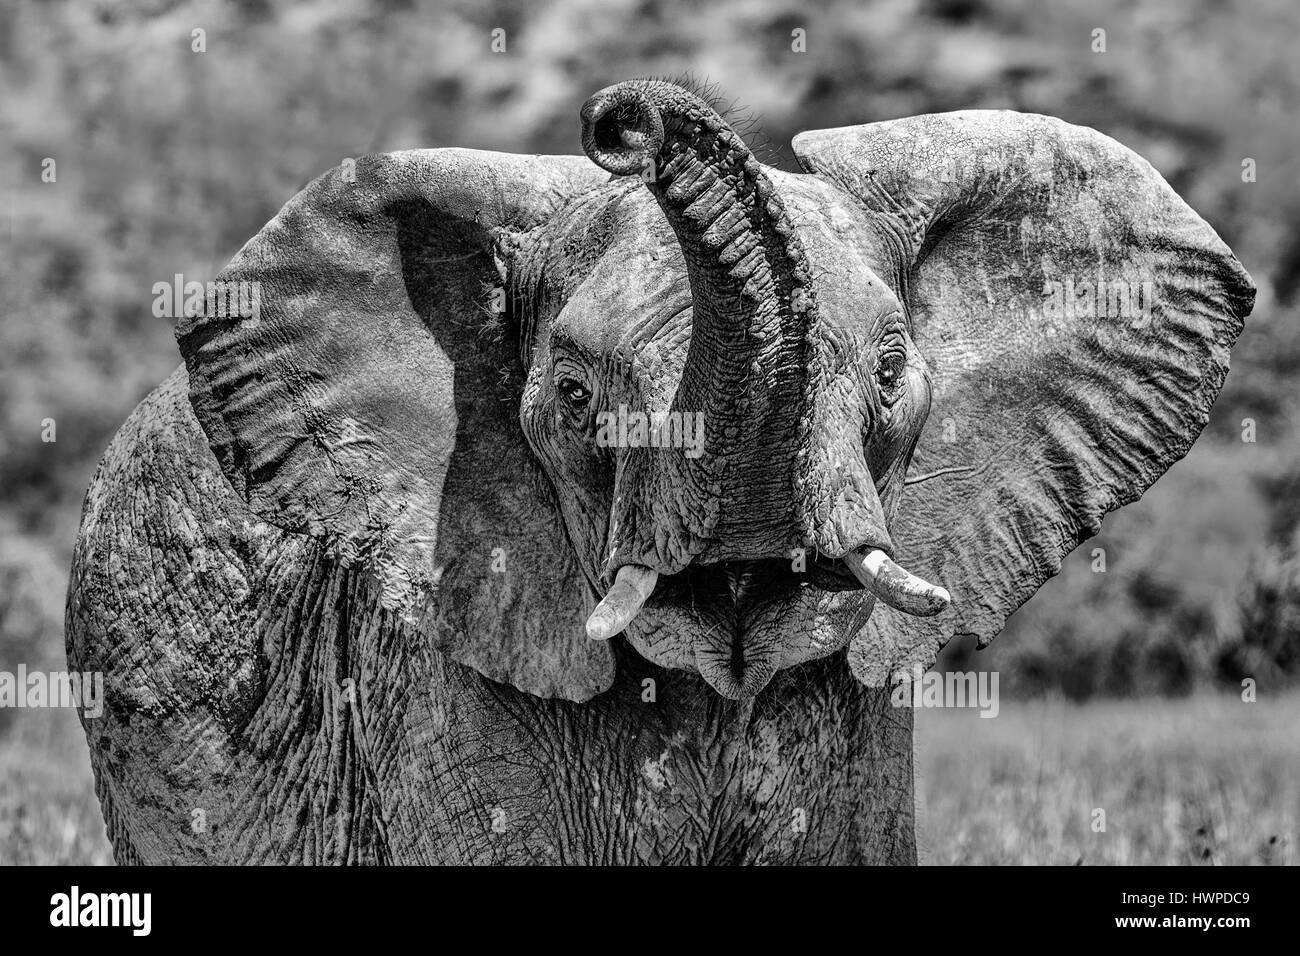 Elephant  close-up Stock Photo